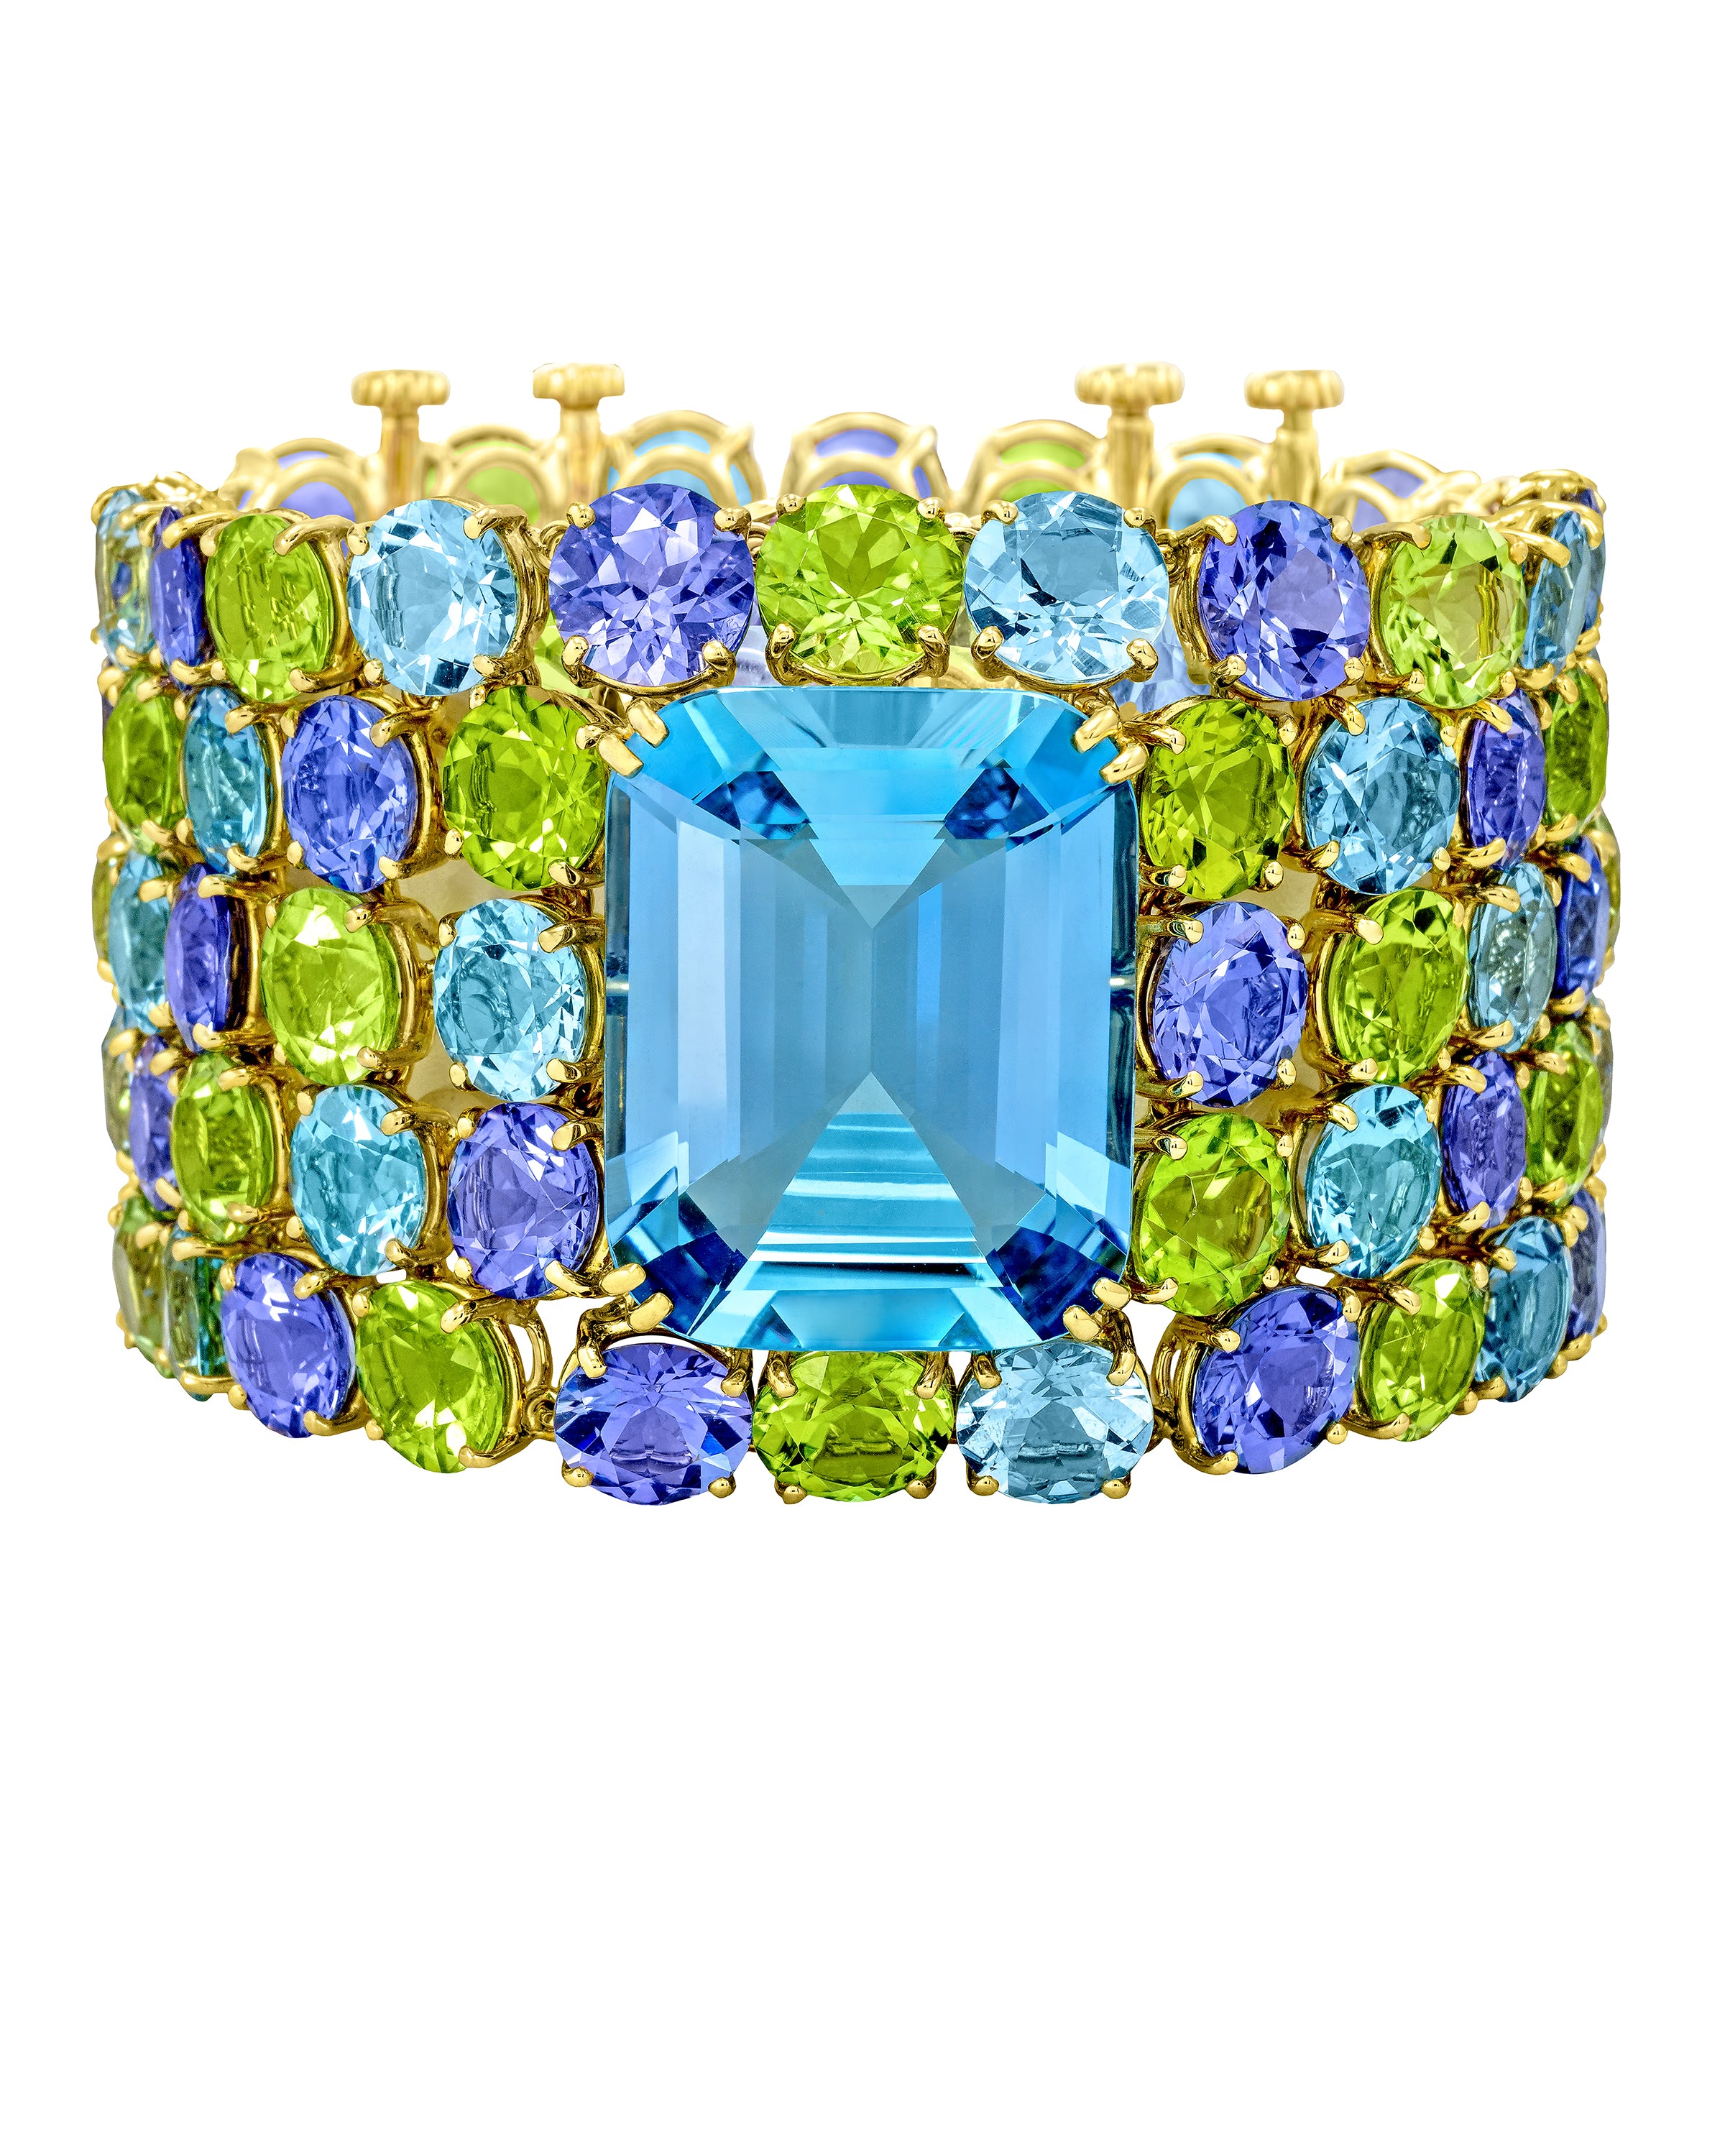 Deco Aquamarine Cuff with centre aqua accompanied by a myriad of gemstones, crafted in 18 karat yellow gold